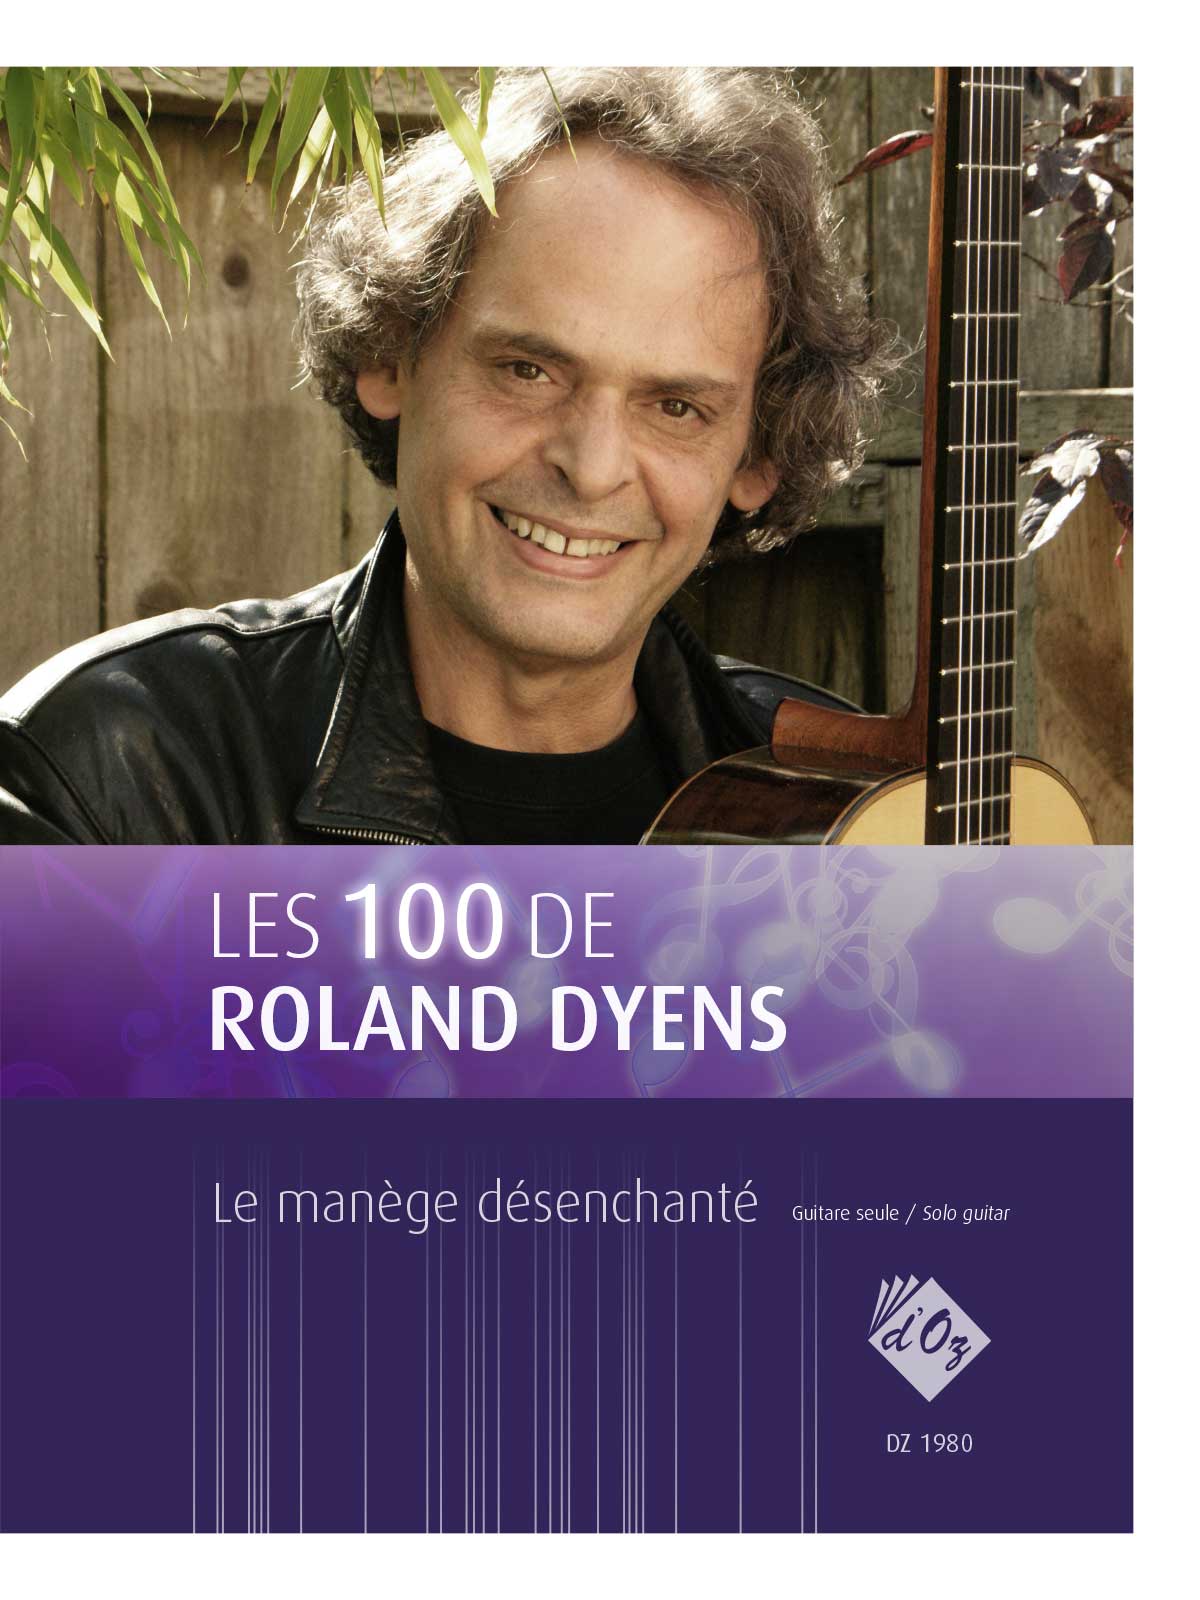 Les 100 De Roland Dyens - Le Manège Désenchanté (DYENS ROLAND)